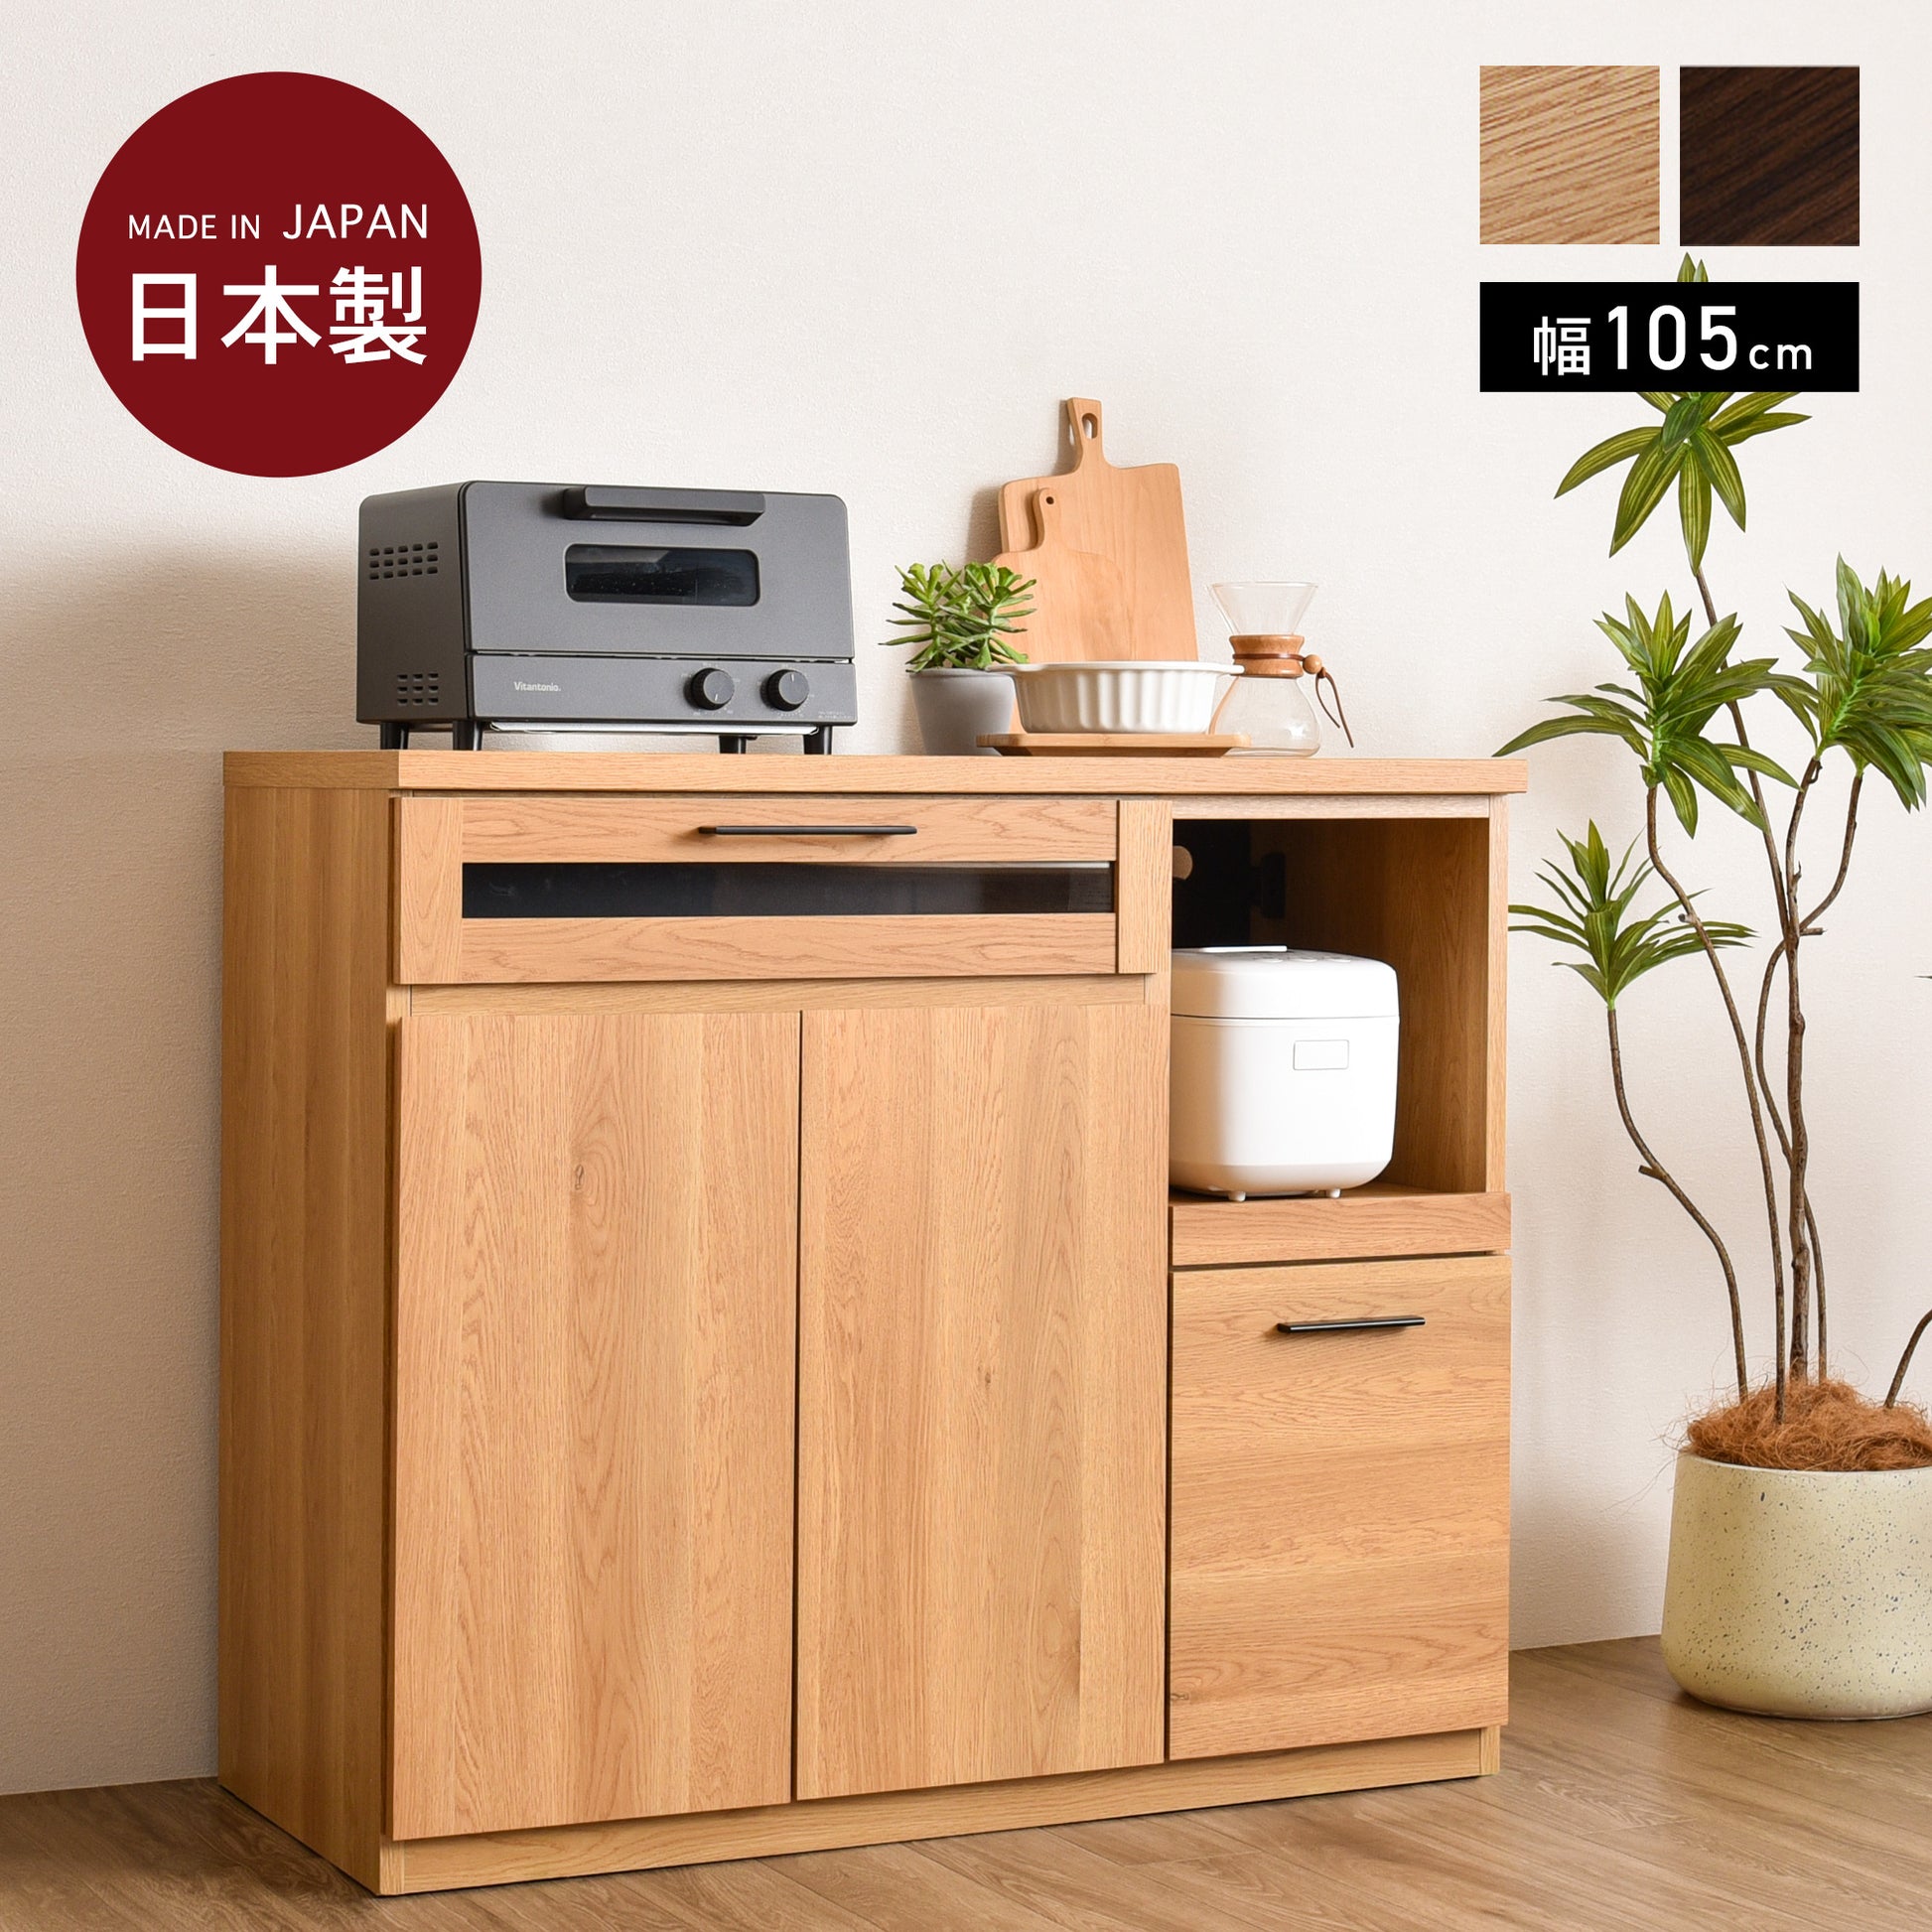 キッチンカウンター 幅105cm 日本製 収納キッチン カウンター 